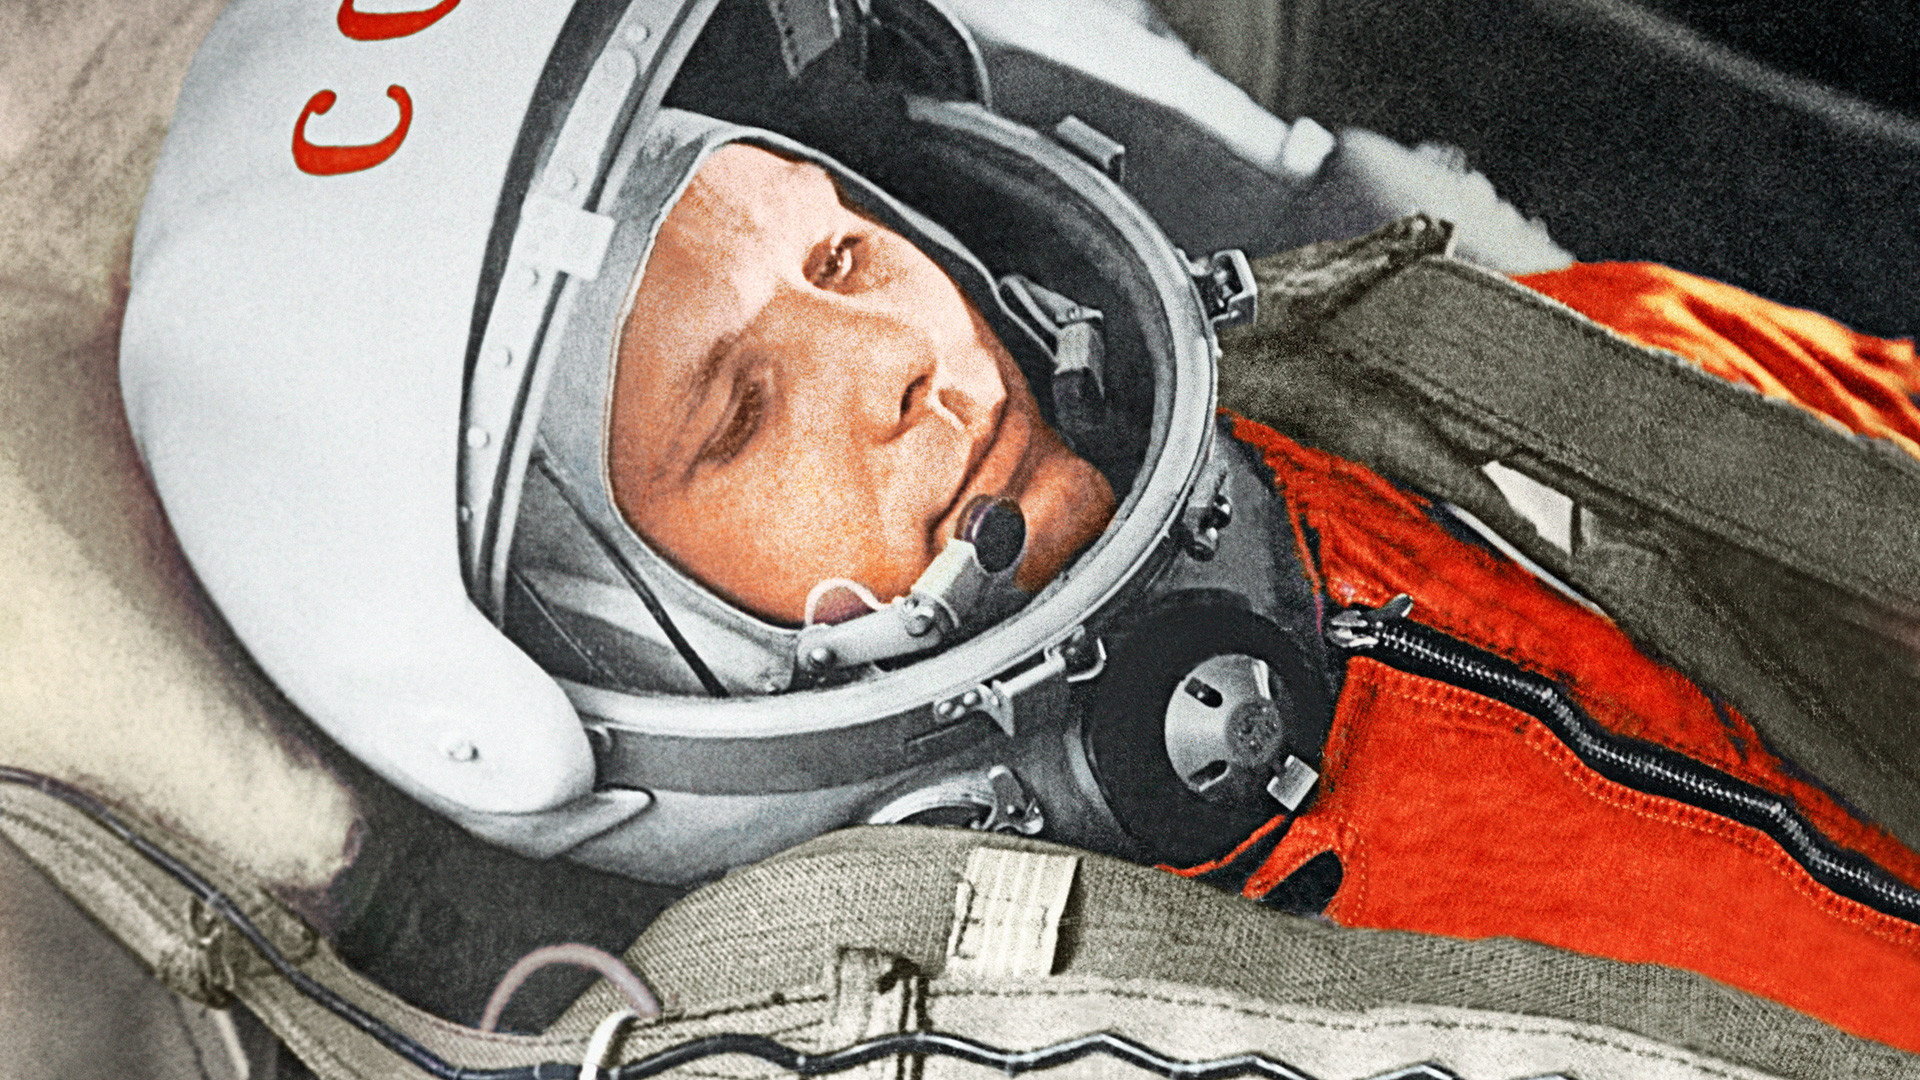 Юрий Гагарин в кабине космического корабля “Восток” во время первого в мире орбитального космического полета 12 апреля 1961 года.